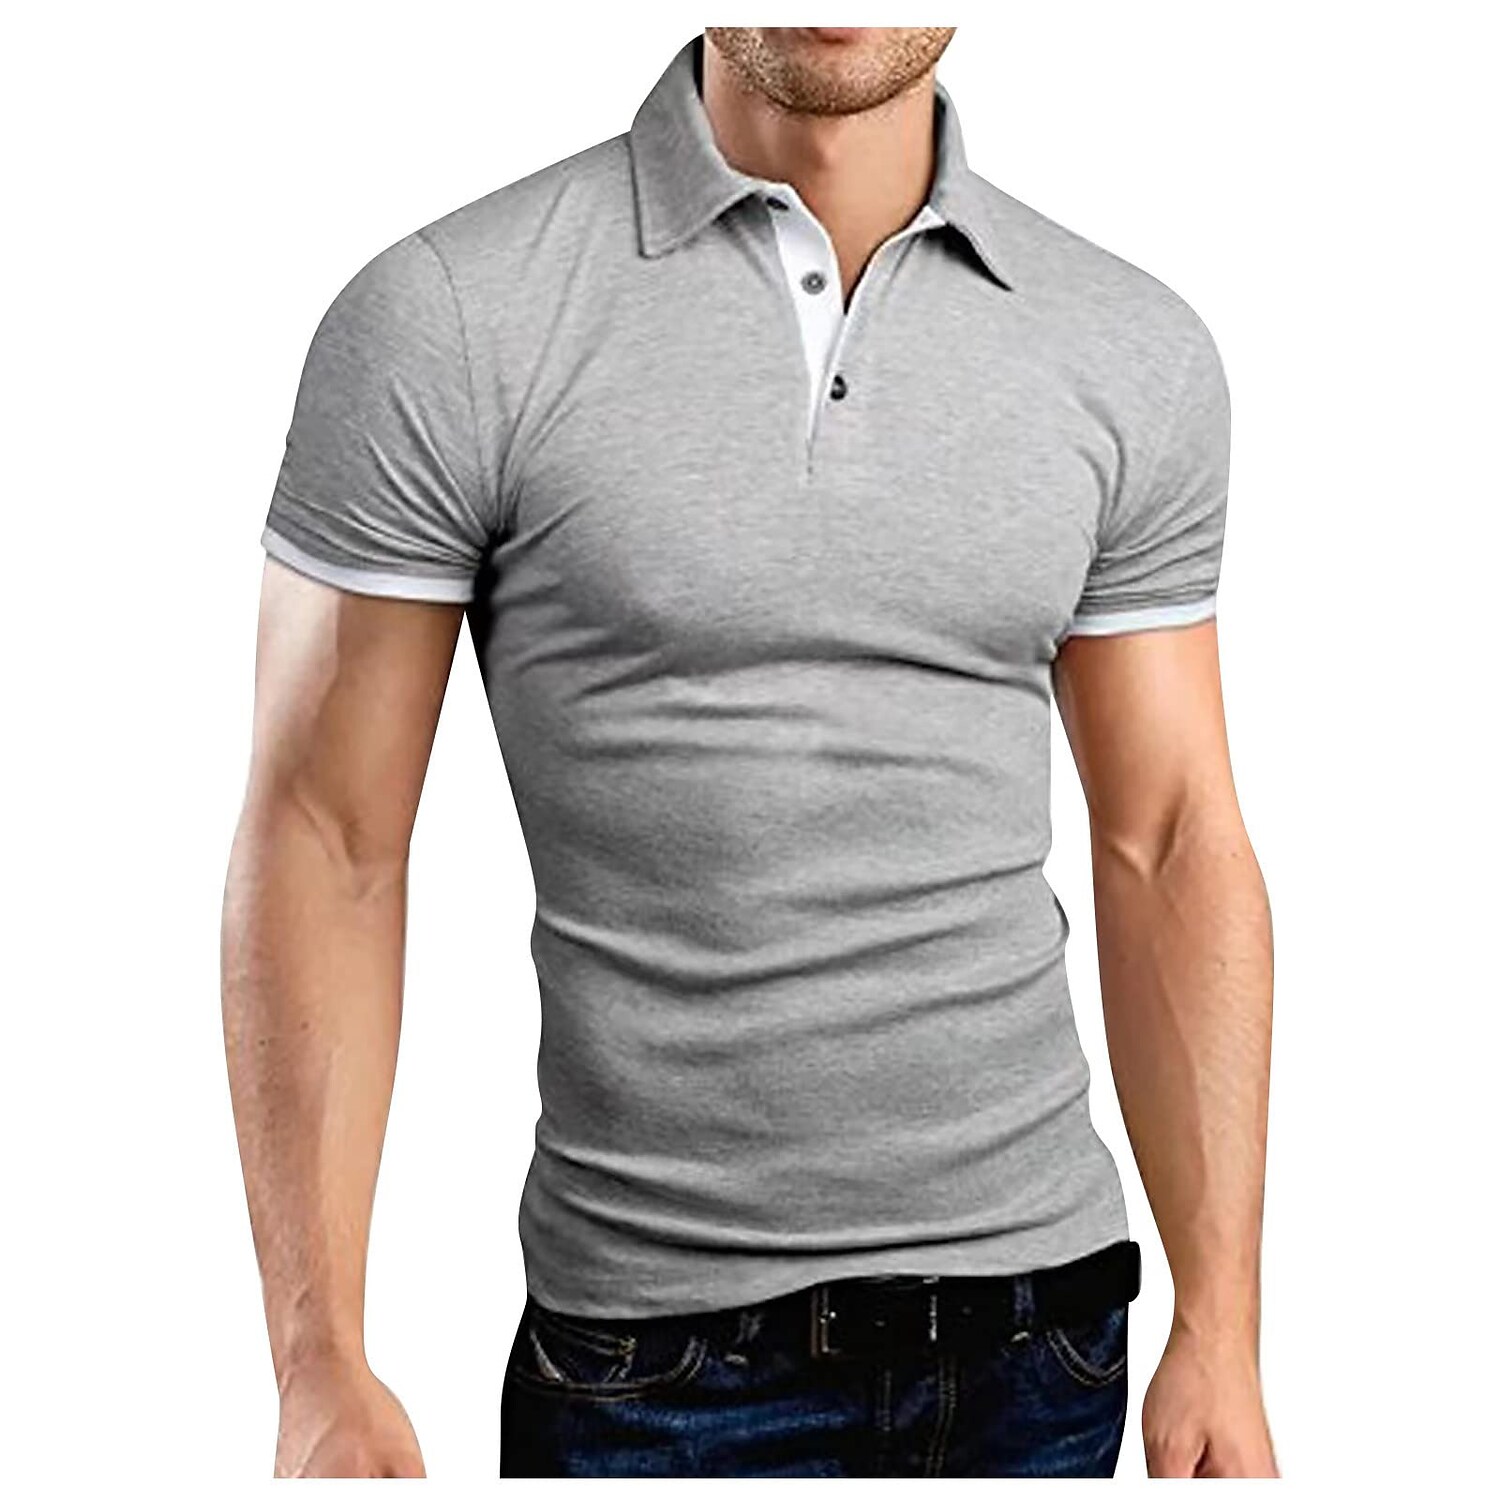 Gymstugan Collar Polo Shirt Golf Shirt